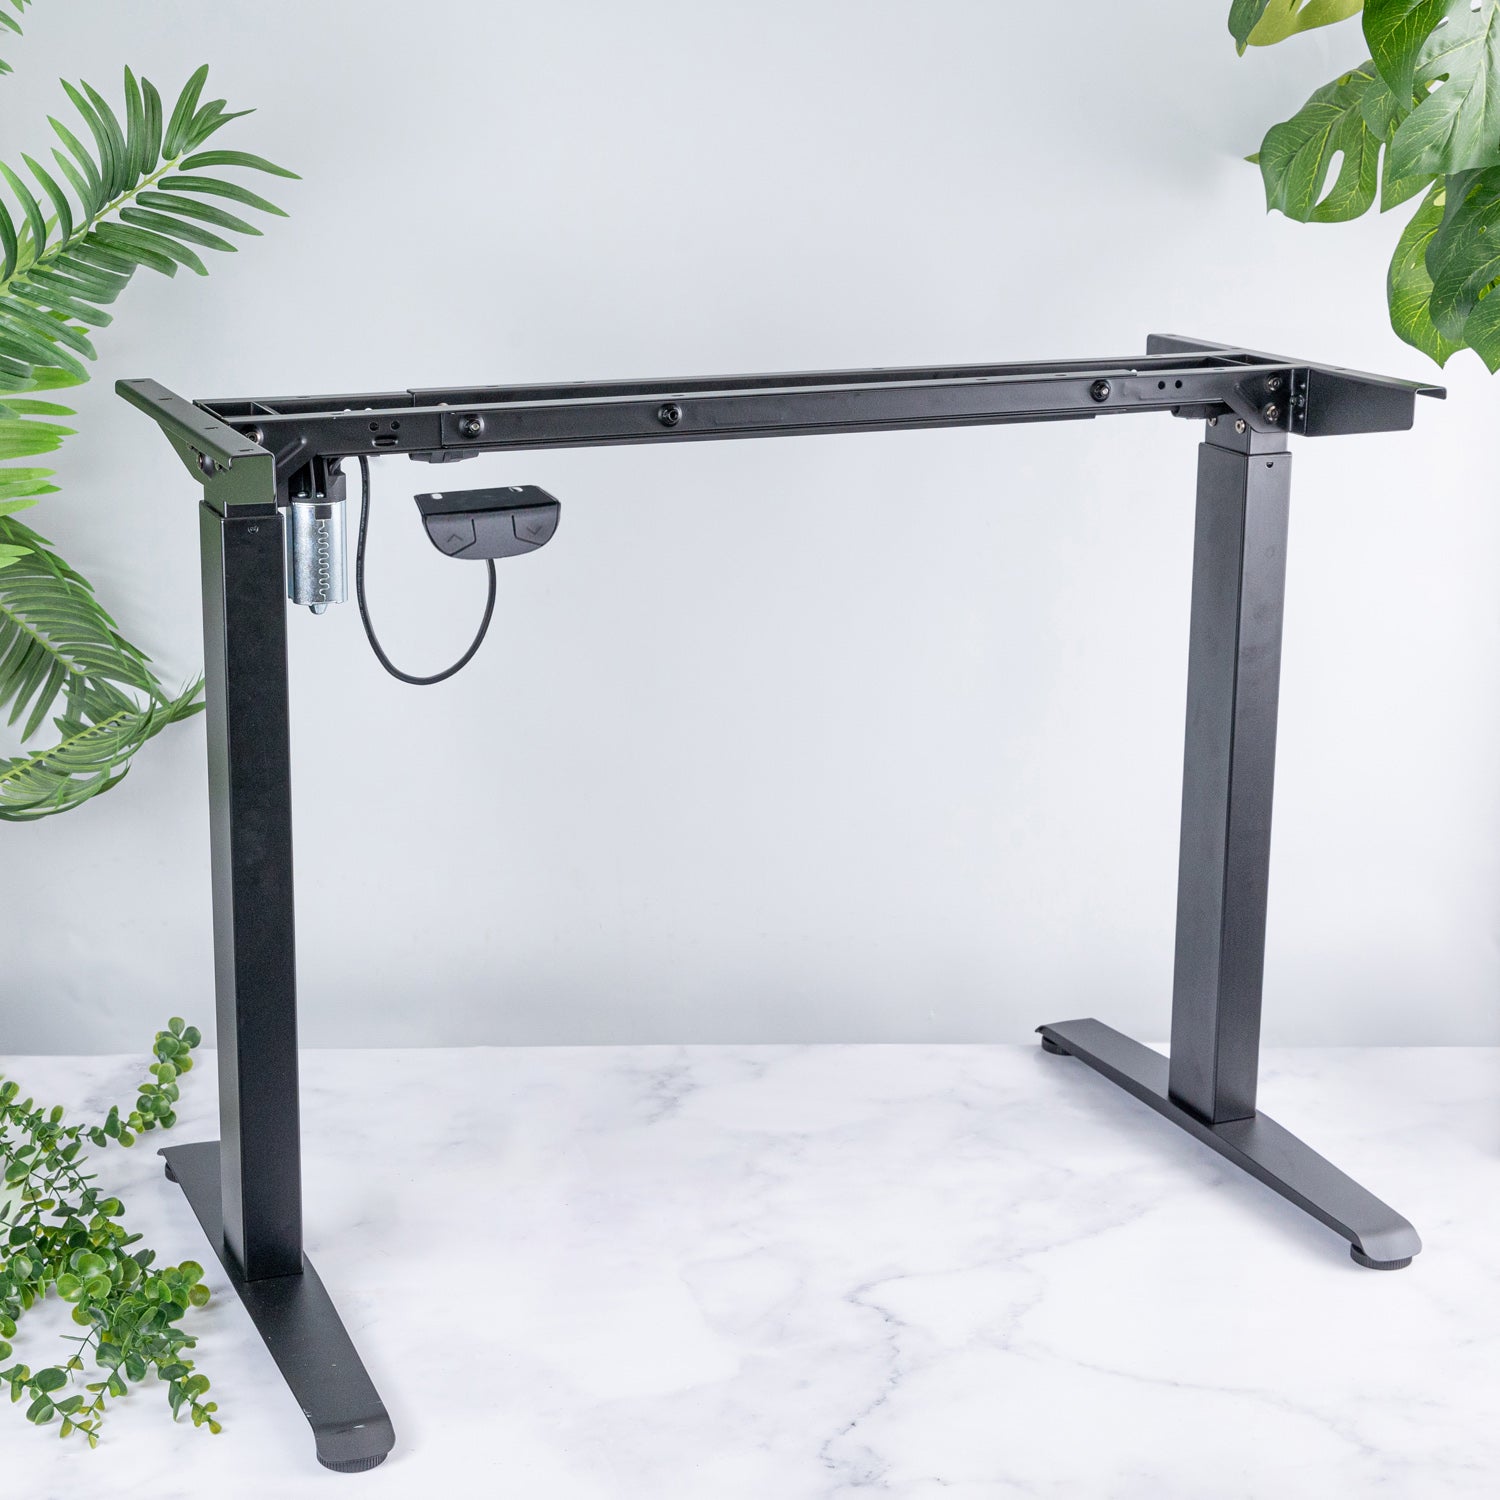 domli d1 Black Electric Height Adjustable Standing Desk Frame